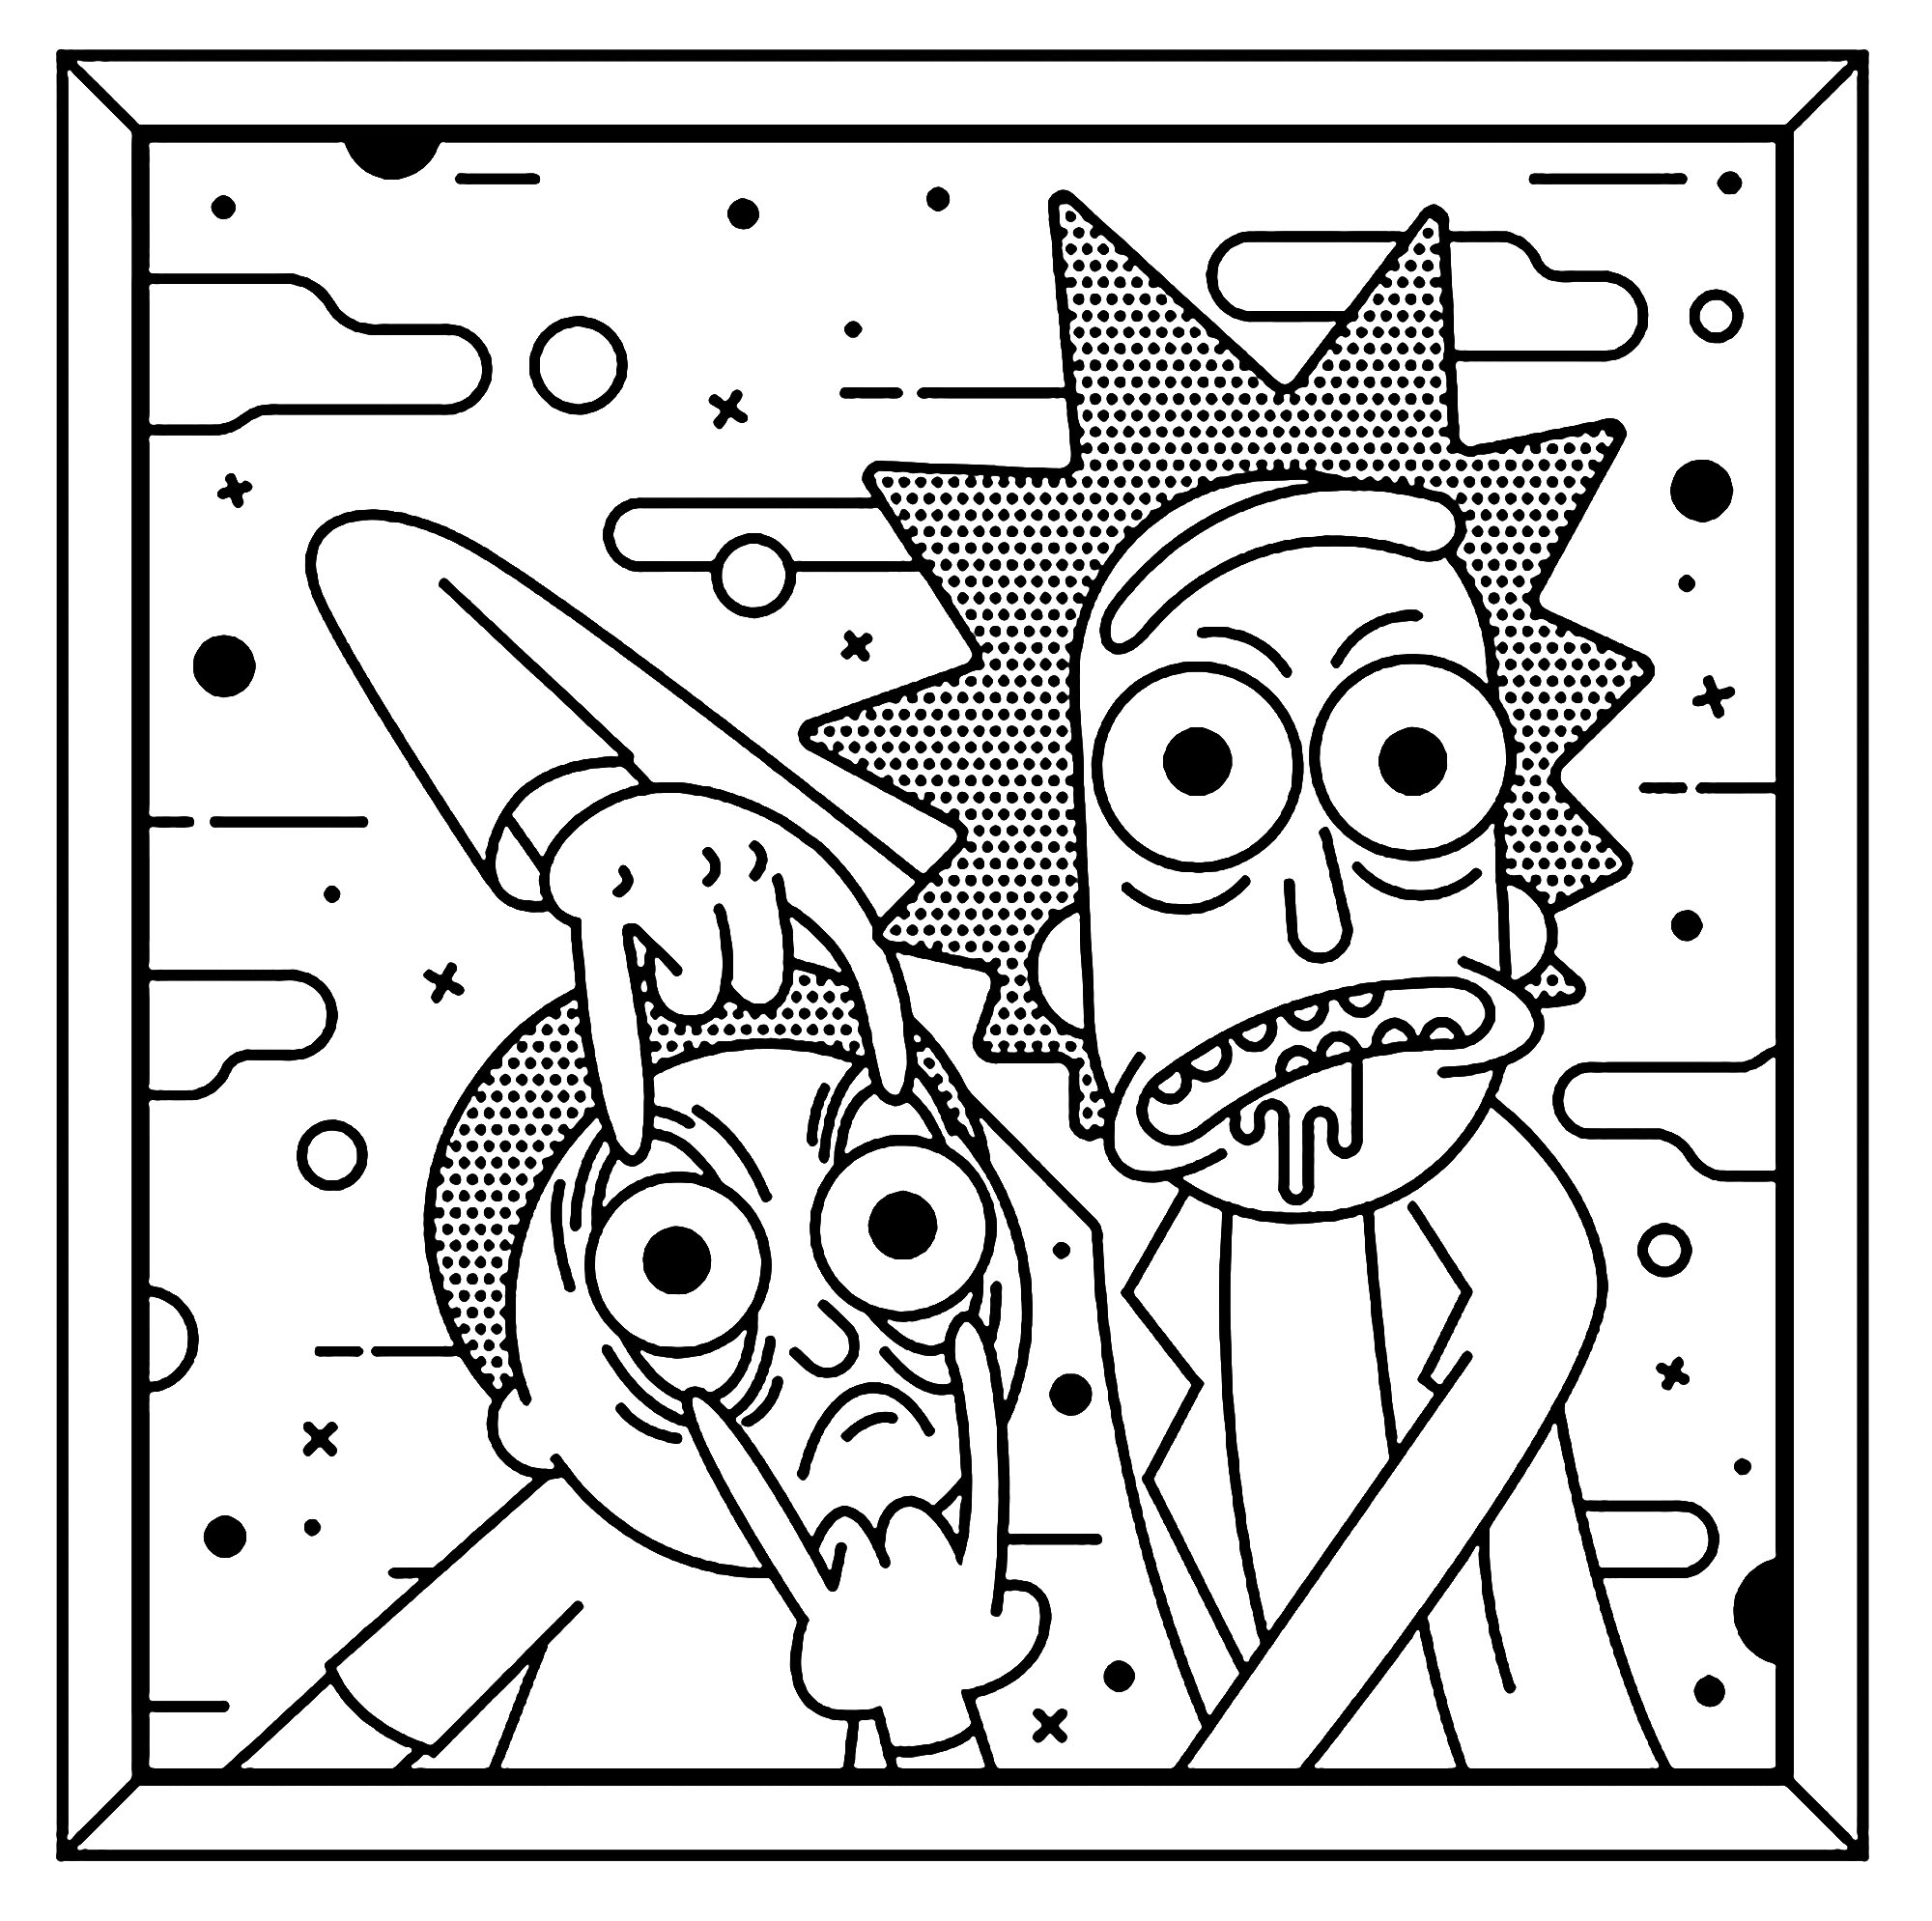 ¿Le gusta el Pop Art?. Los dos personajes principales, Rick y Morty, están retratados con un estilo muy característico de Roy Lichtenstein.